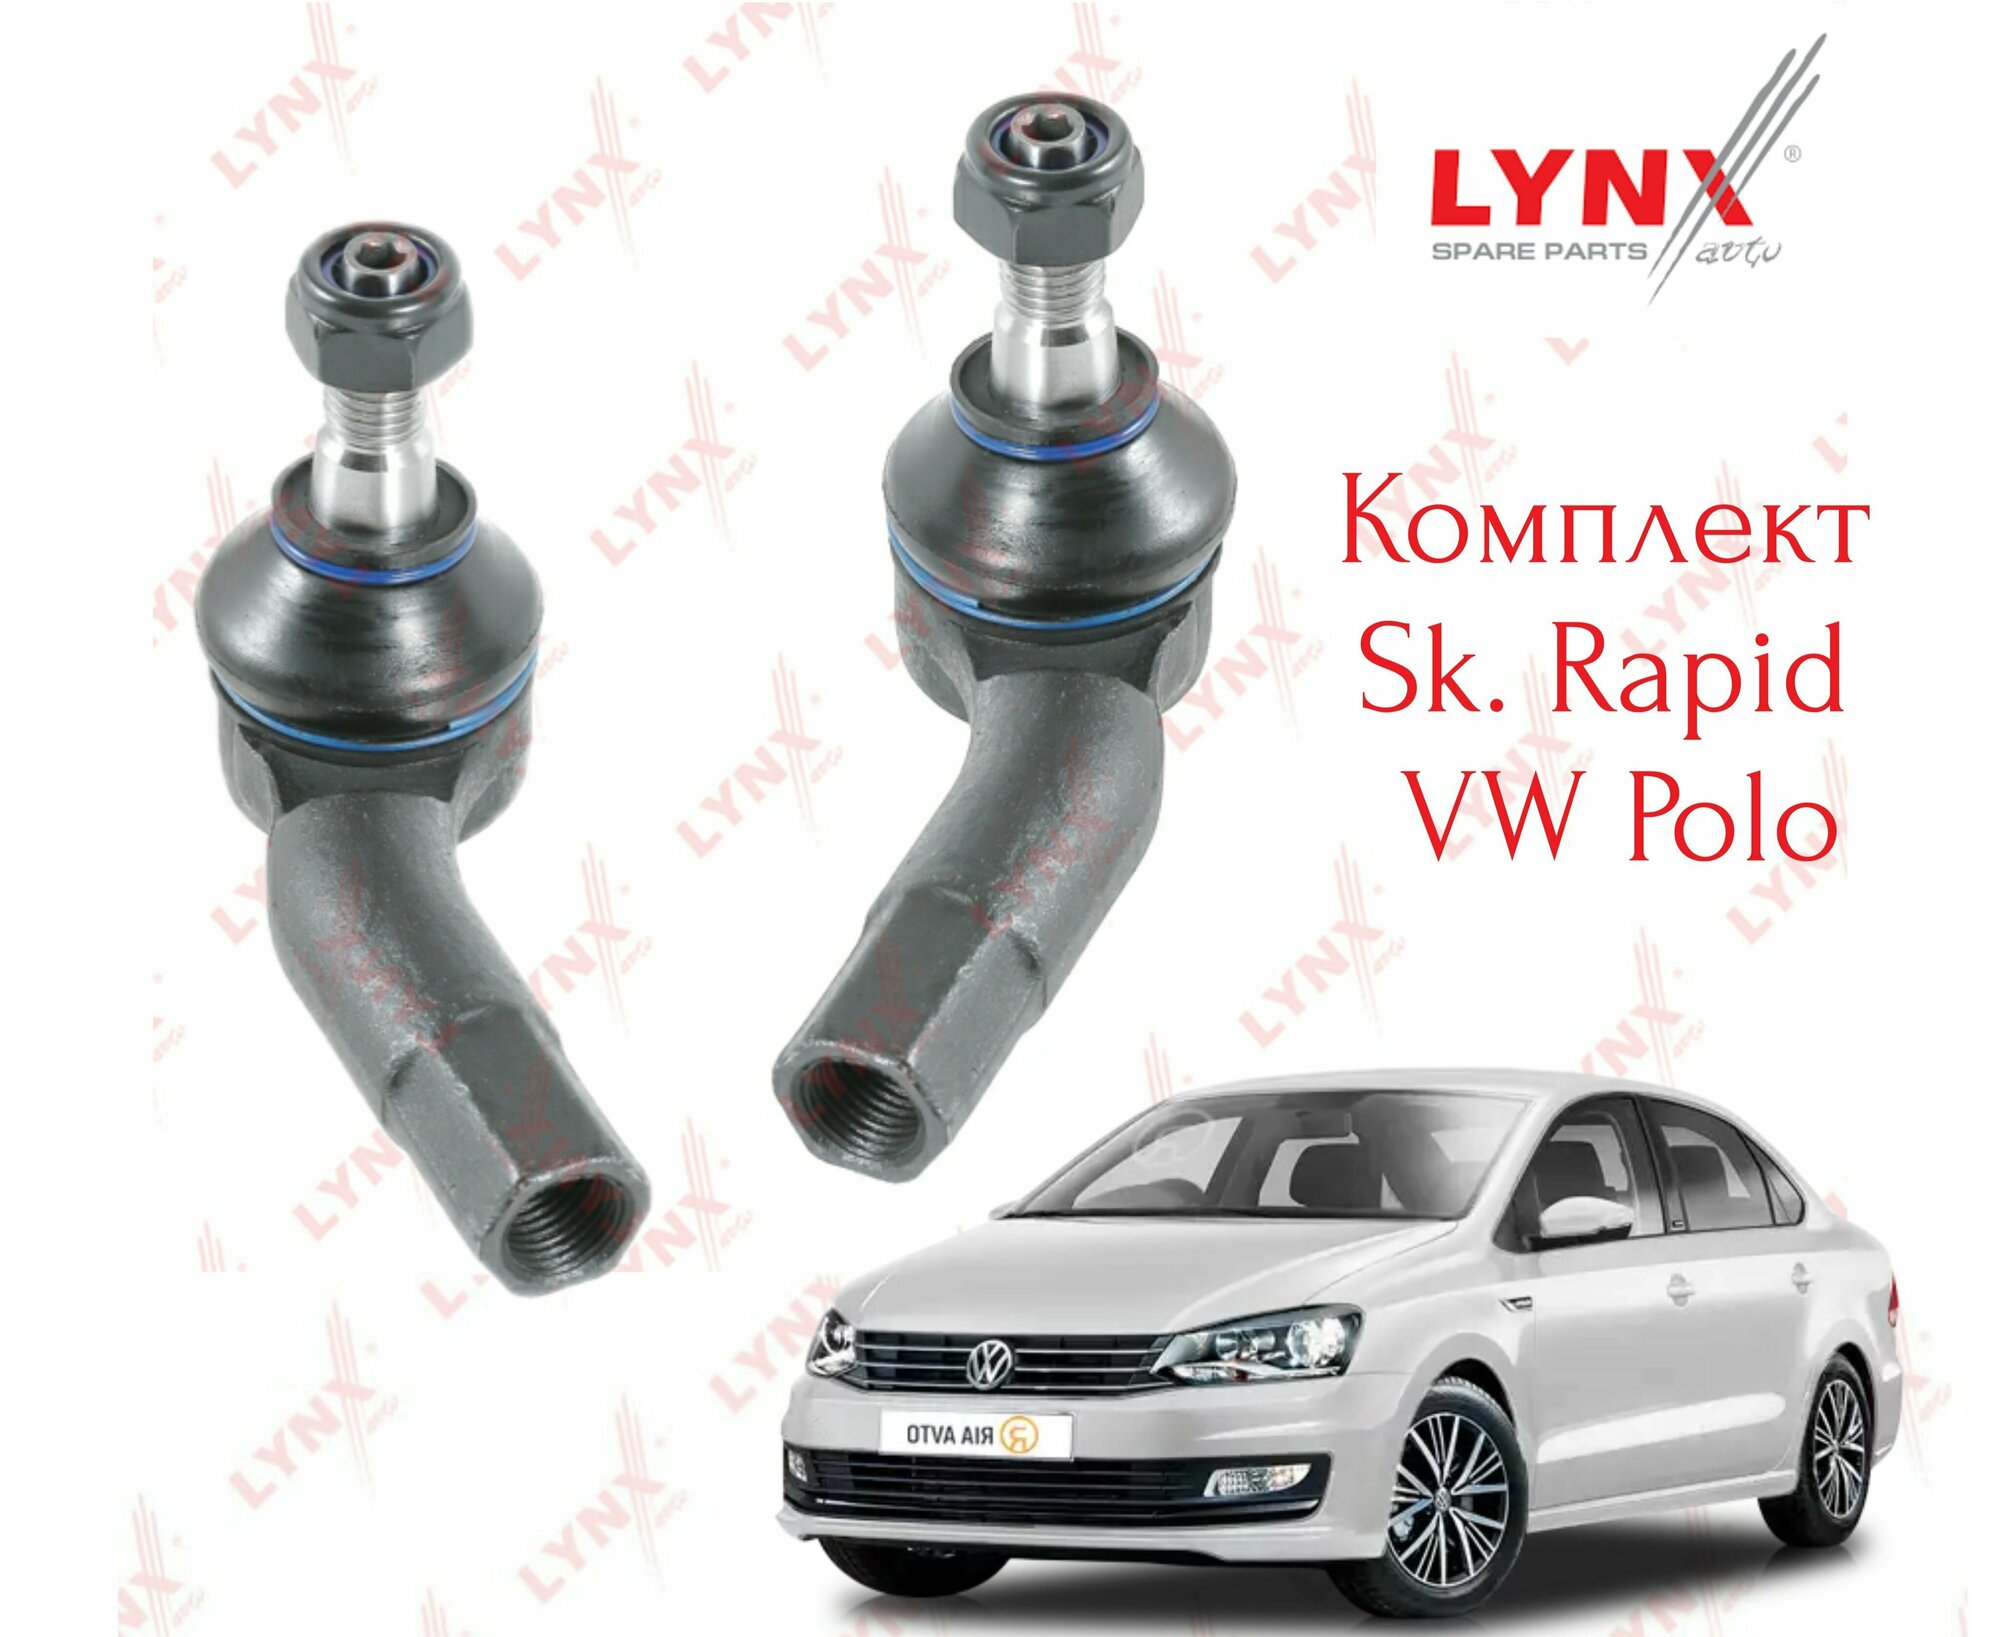 Комплект рулевых наконечников Lynx (Япония) VW Polo sd , Sk Rapid правый + левый